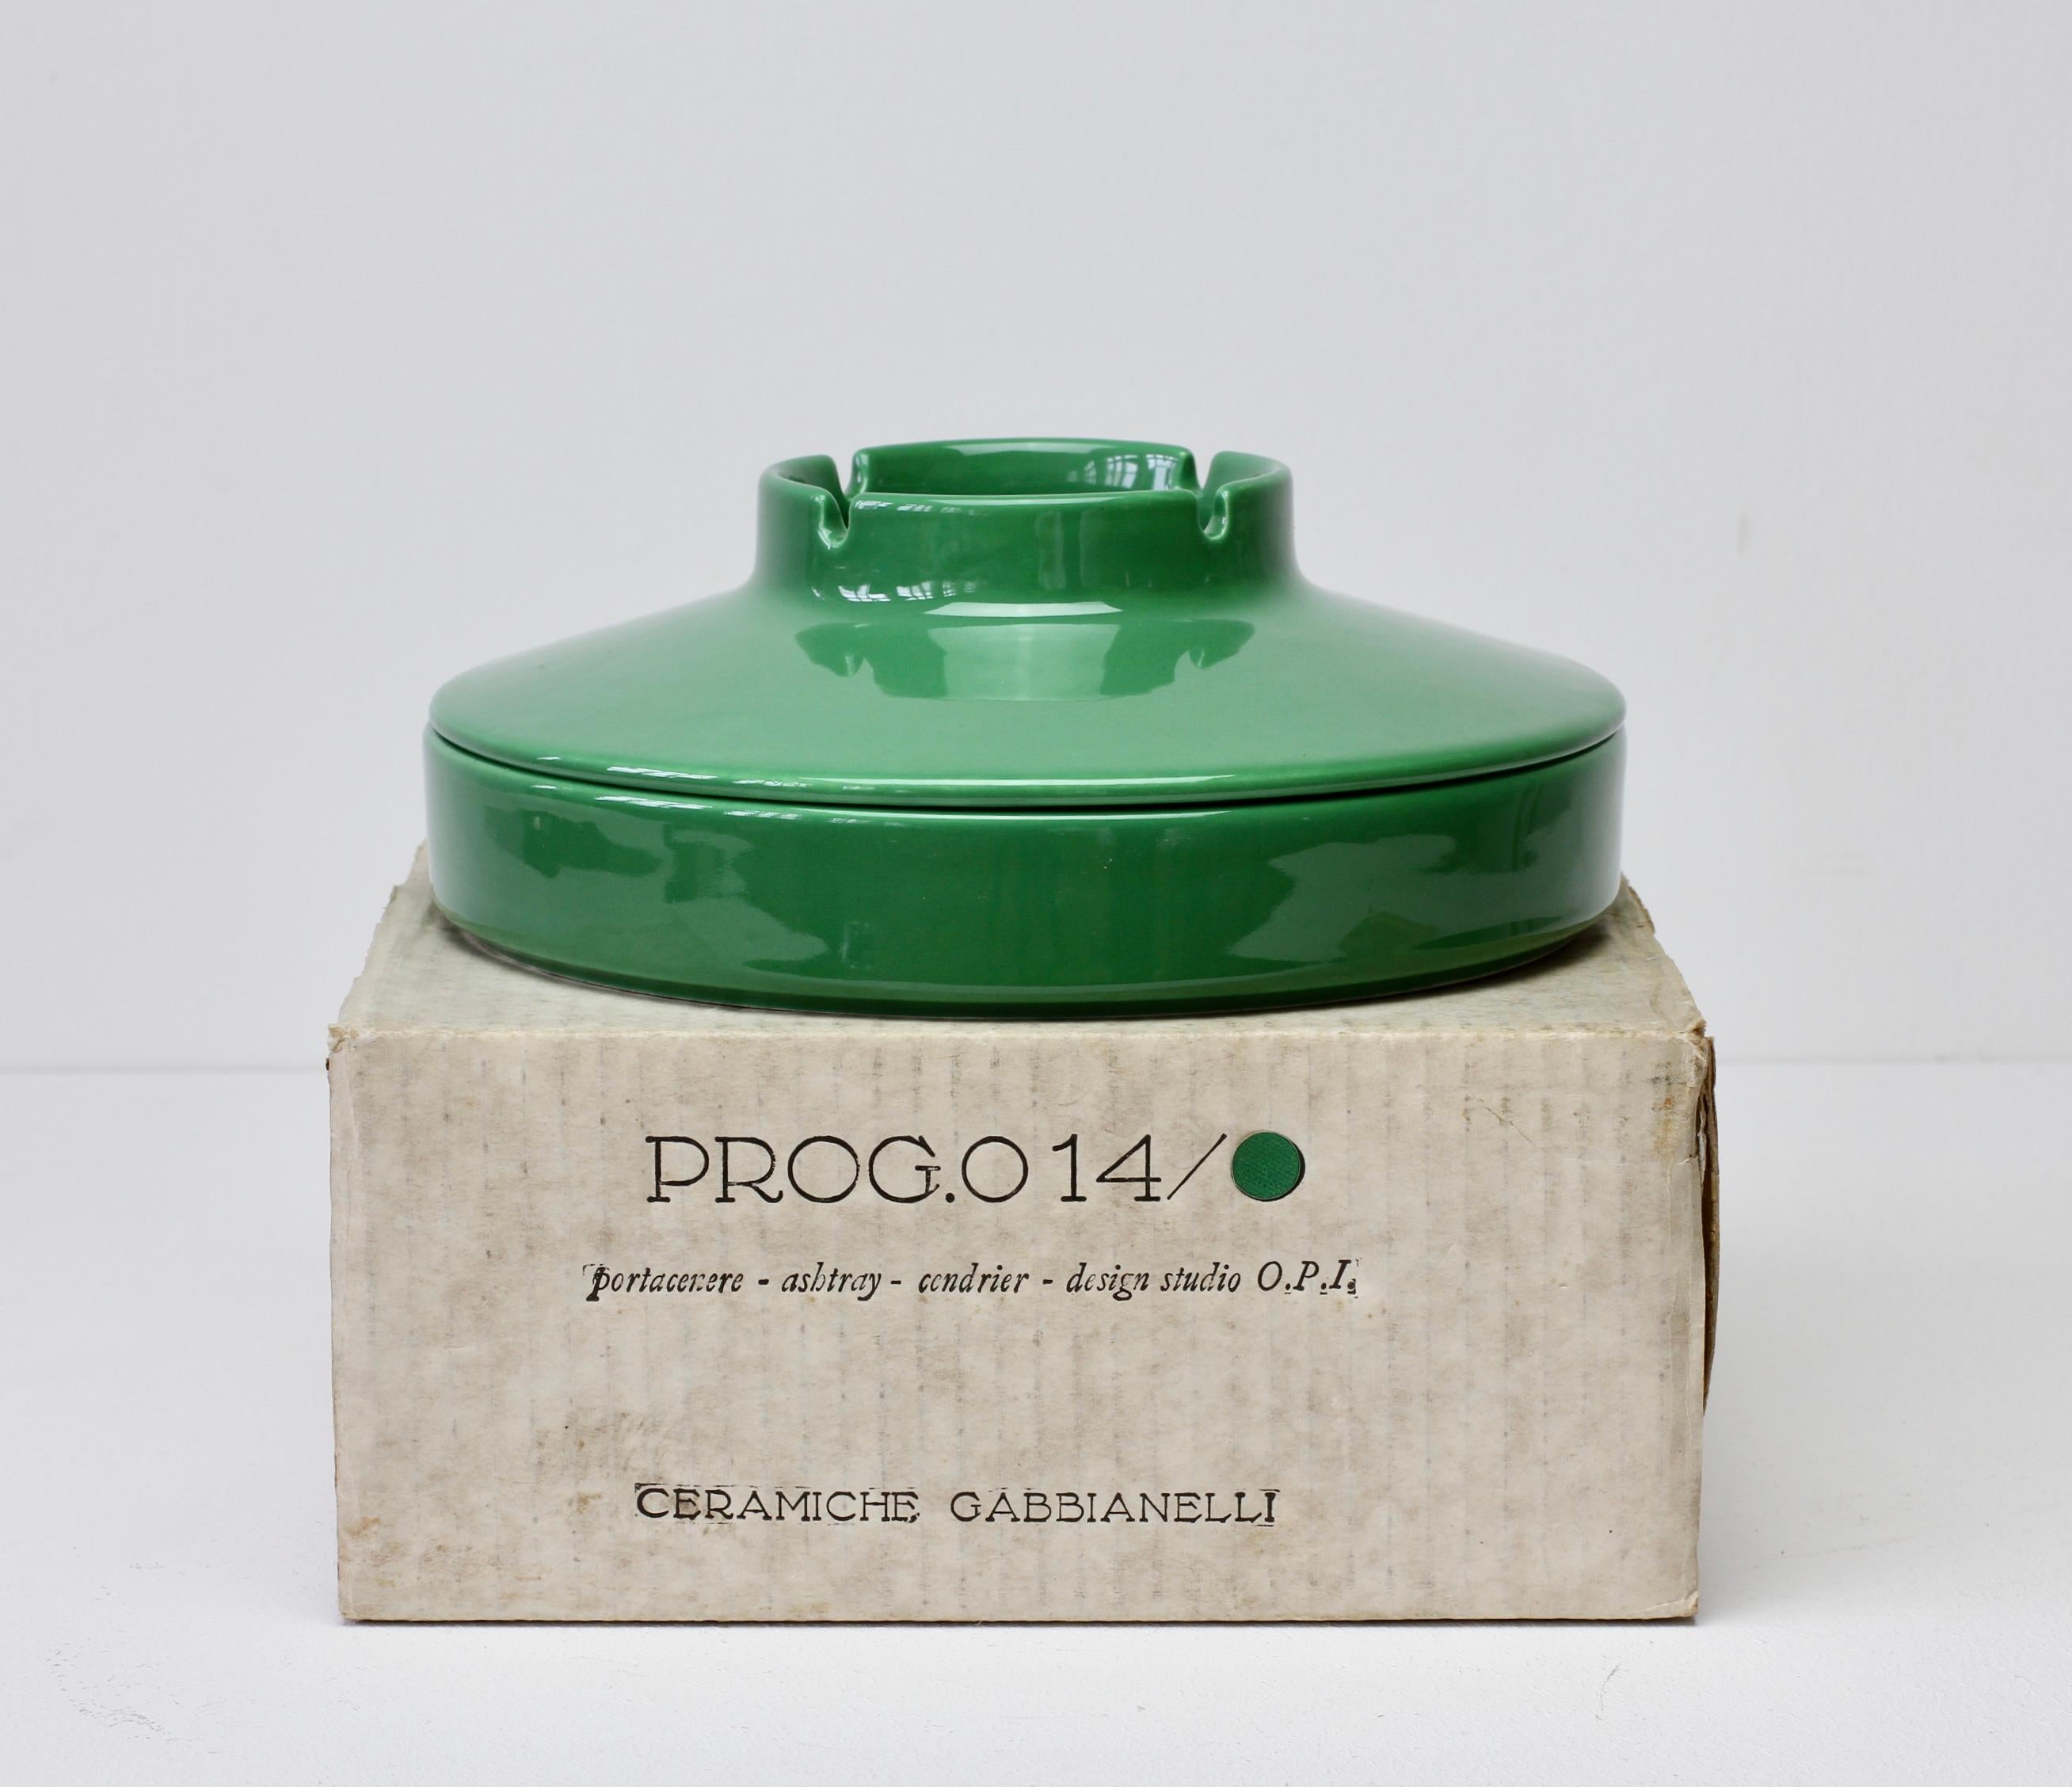 Grand cendrier vintage en céramique italienne verte conçu par le Studio O.P.I. pour Gabbianelli Ceramiche, fabriqué à Milan, Italie, vers 1970. Trouvé rarement dans la boîte d'origine - nouvel ancien article de stock.